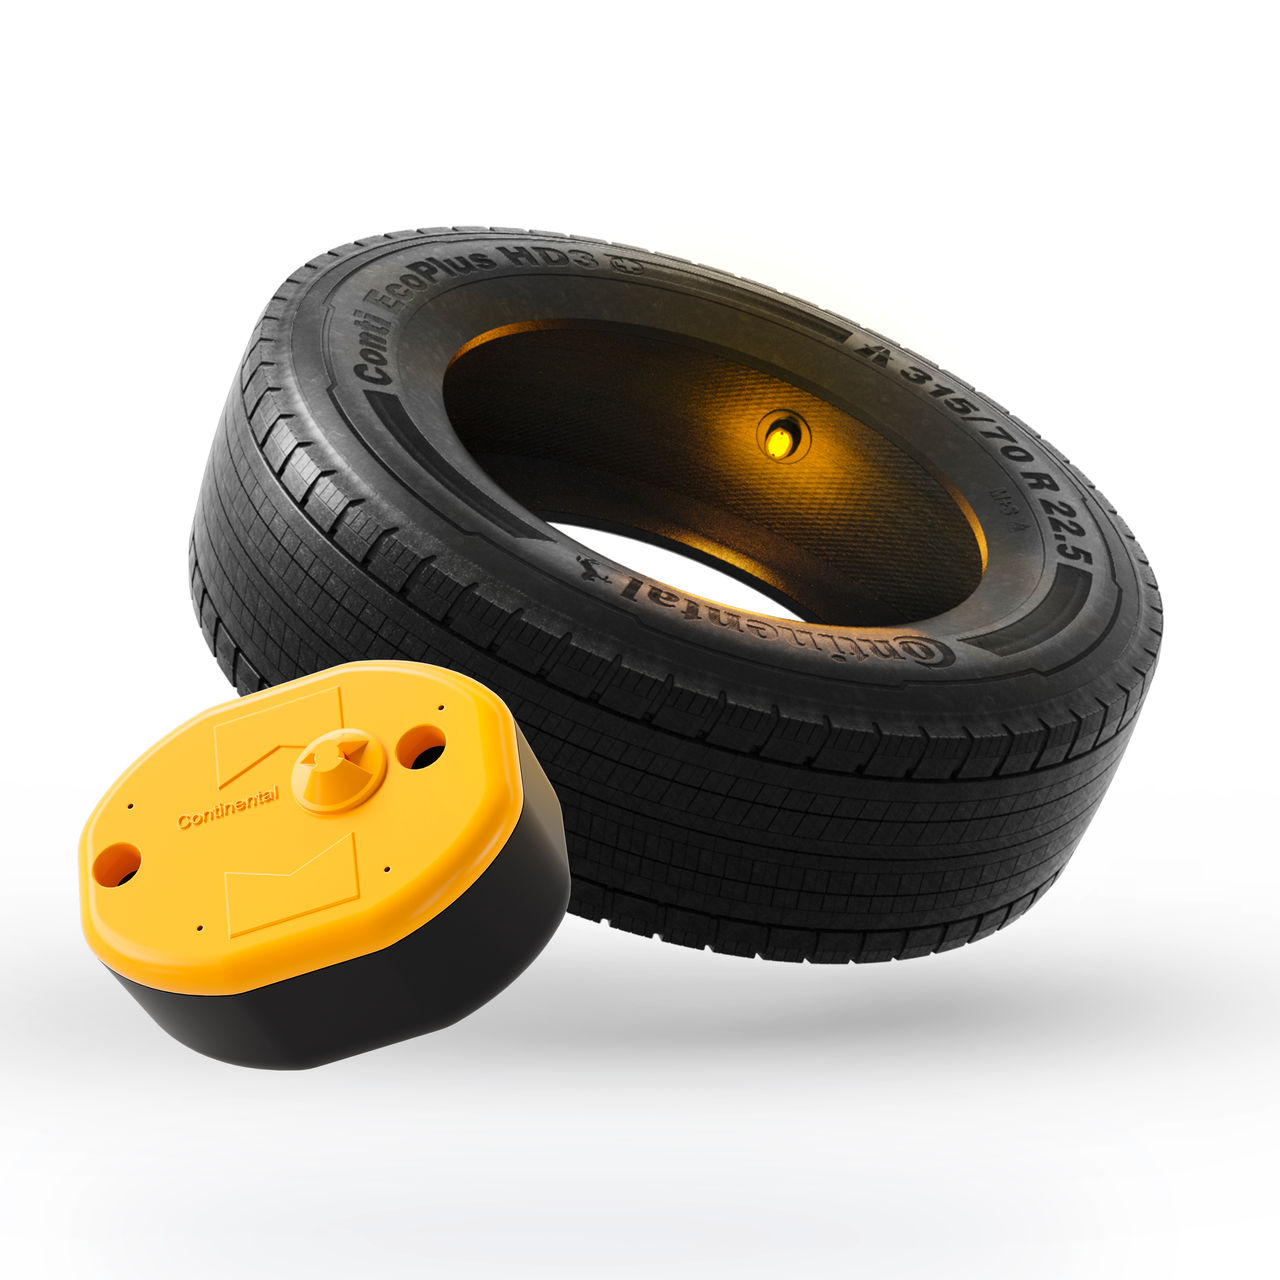 Foto de pneu Continental com sensor inteligente dentro instalado + imagem do sensor do pneu em grande escala na frente do pneu